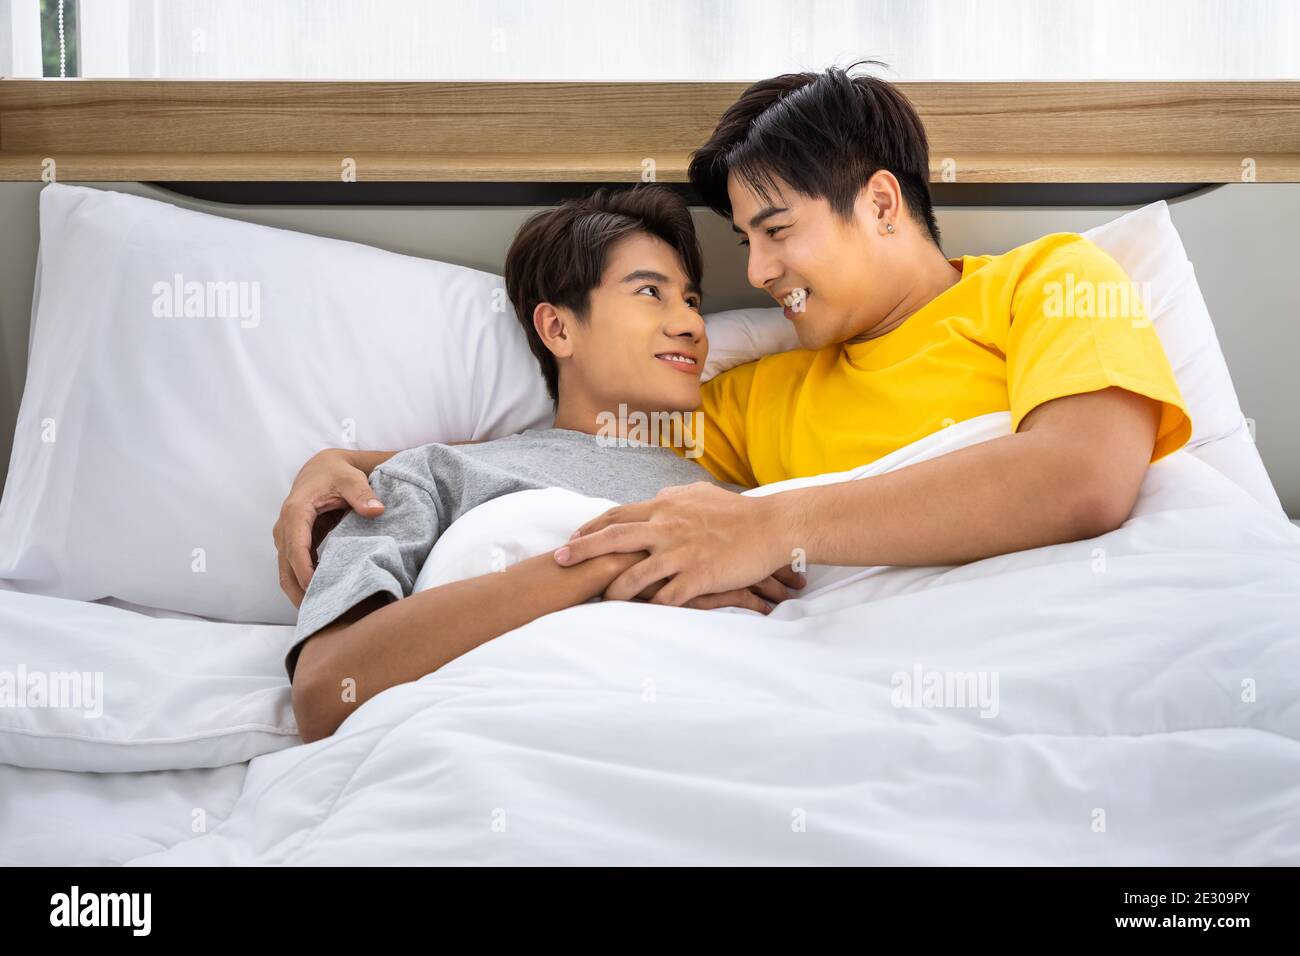 Felice omosessuale asiatico uomini gay coppia maschile mentendo e abbracciando a letto. LGBT e concetto di diversità sessuale. Foto Stock